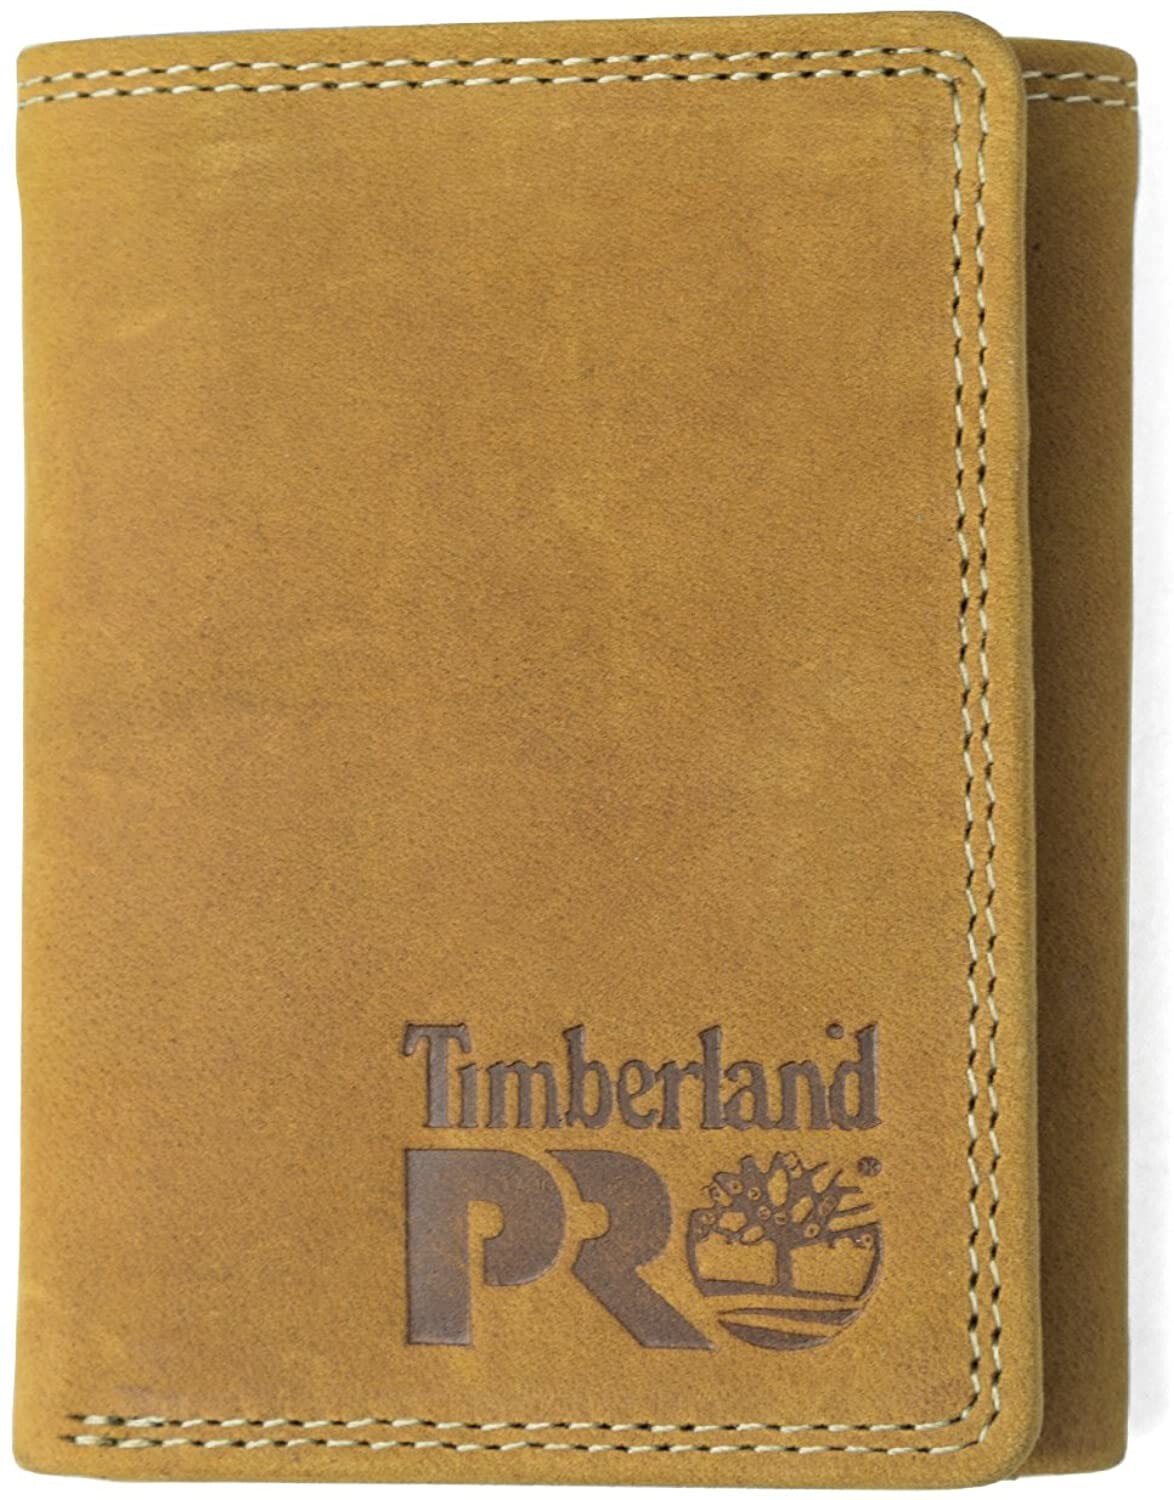 Мужское портмоне кожаное вертикальное черное без застежки   	Timberland PRO Men's Leather RFID Trifold Wallet with Id Window